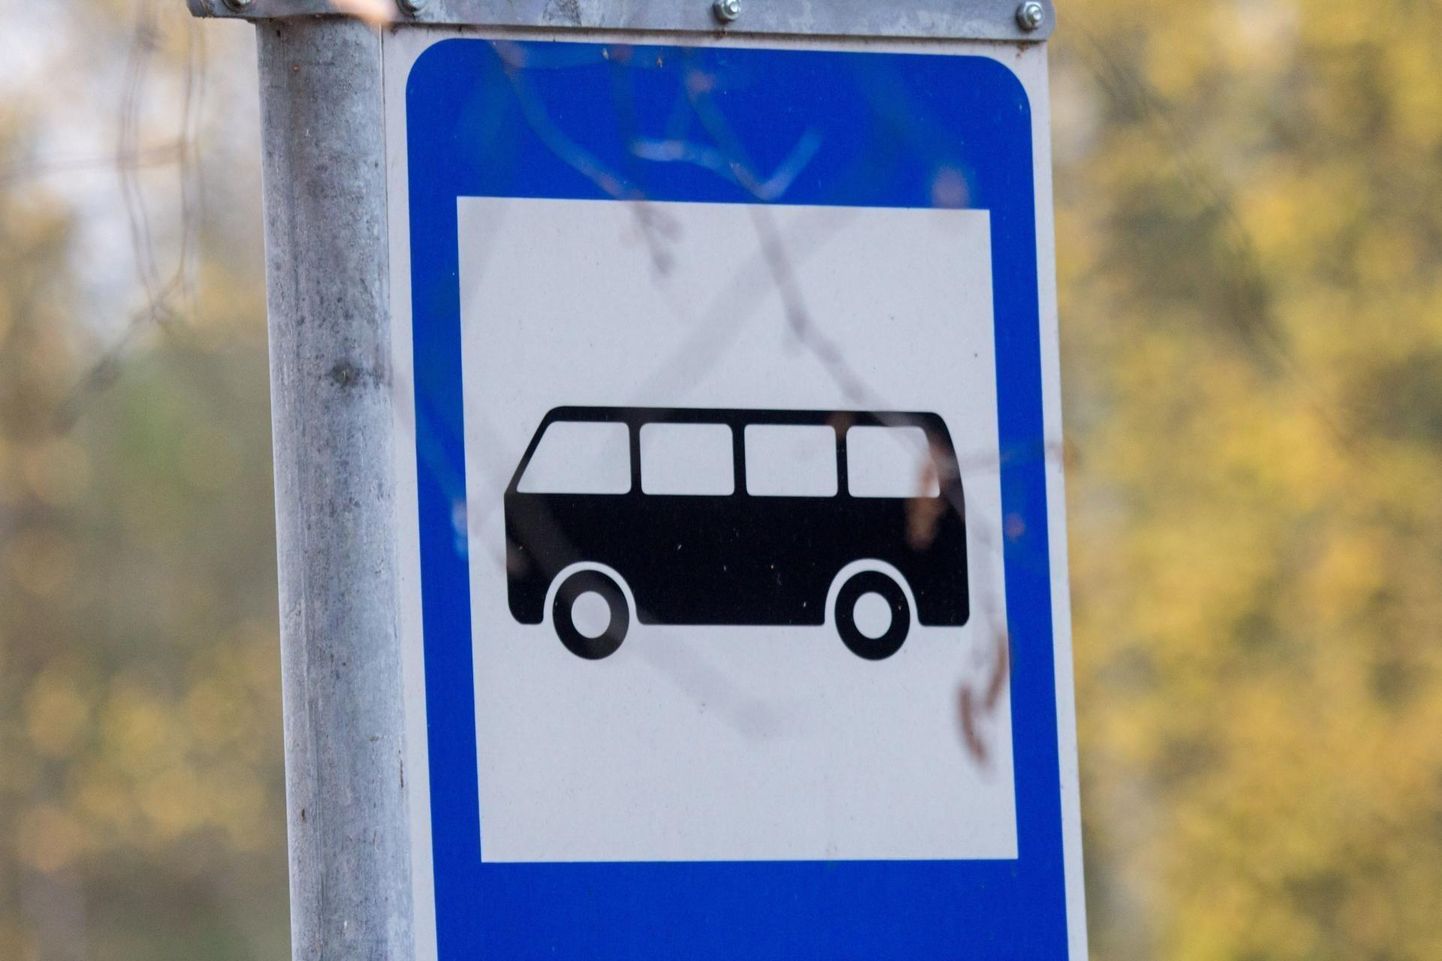 Aastaid kasutult seisnud bussipeatuses hakkavad ühissõidukid laupäevast alates vajaduse korral peatuma.